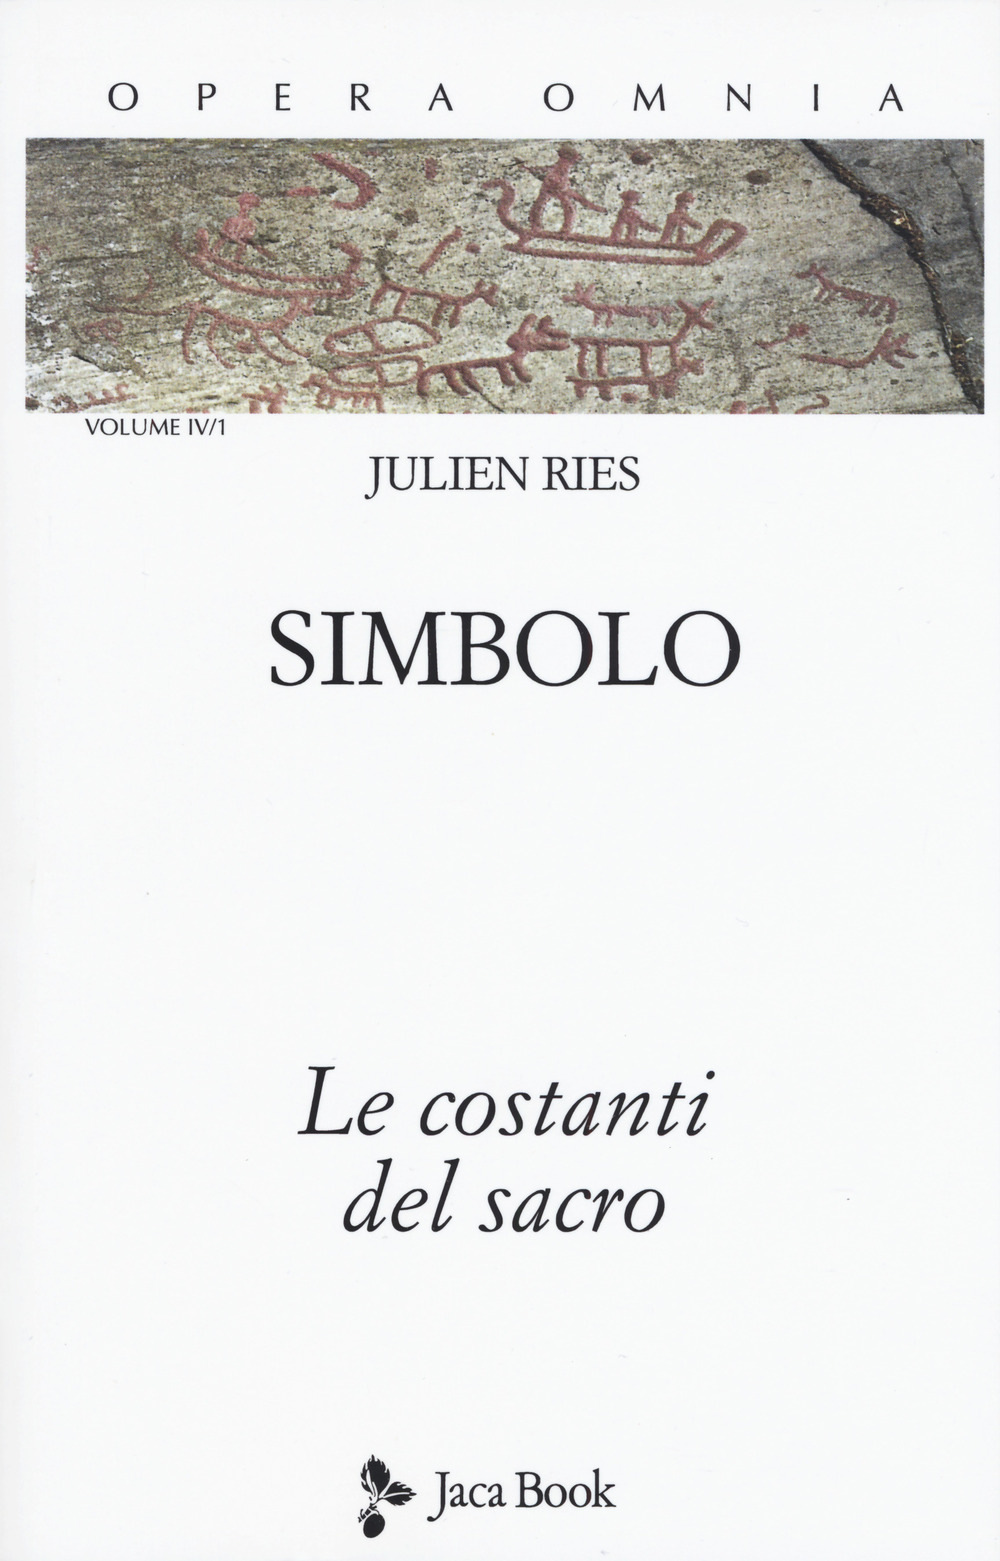 Libri Ries Julien - Opera Omnia Vol 4/1 NUOVO SIGILLATO, EDIZIONE DEL 20/02/2020 SUBITO DISPONIBILE